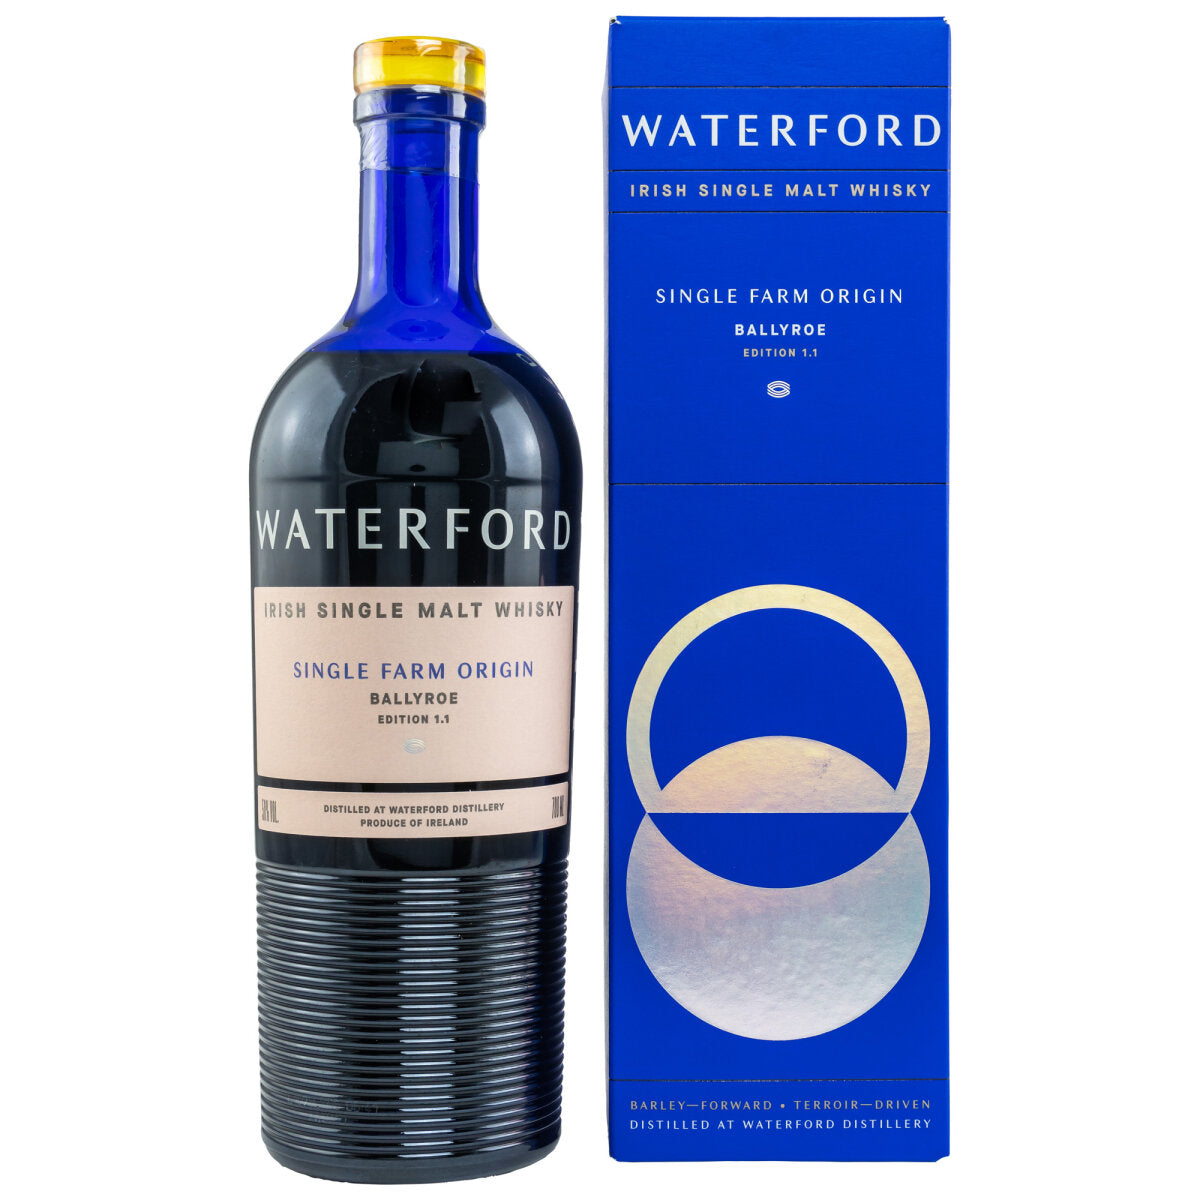 Waterford Single Farm Origin BALLYROE Irish Single Malt Edition 1.1 50% Vol. 0,7l in Giftbox